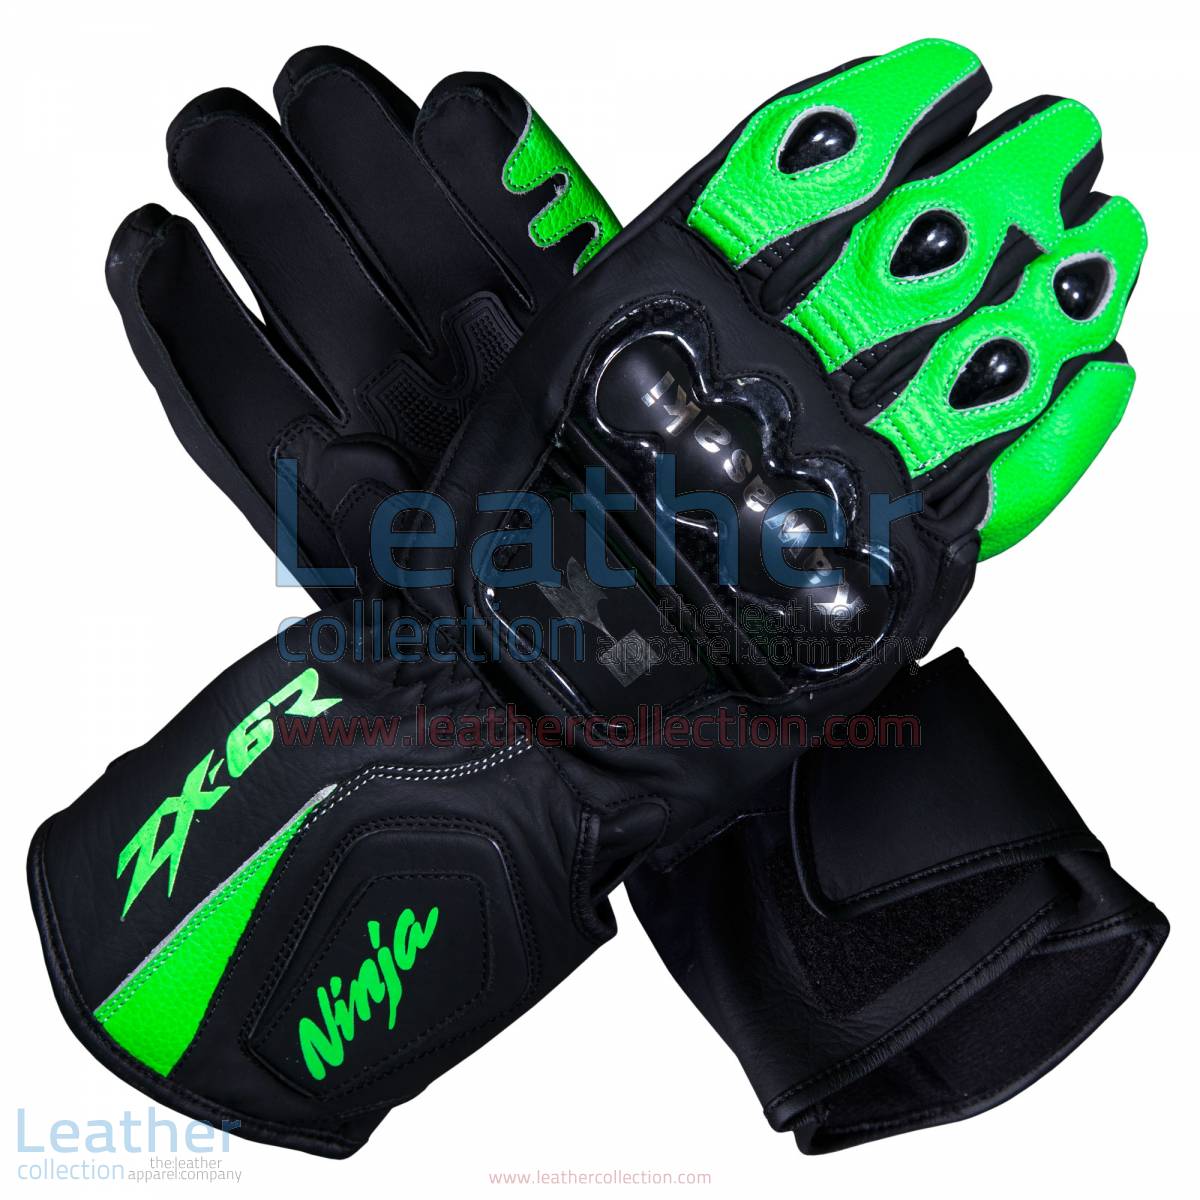 Kawasaki Ninja ZX-6R Leather Motorcycle Gloves | Kawasaki Ninja,Kawasaki Ninja ZX-6R leather motorcycle gloves